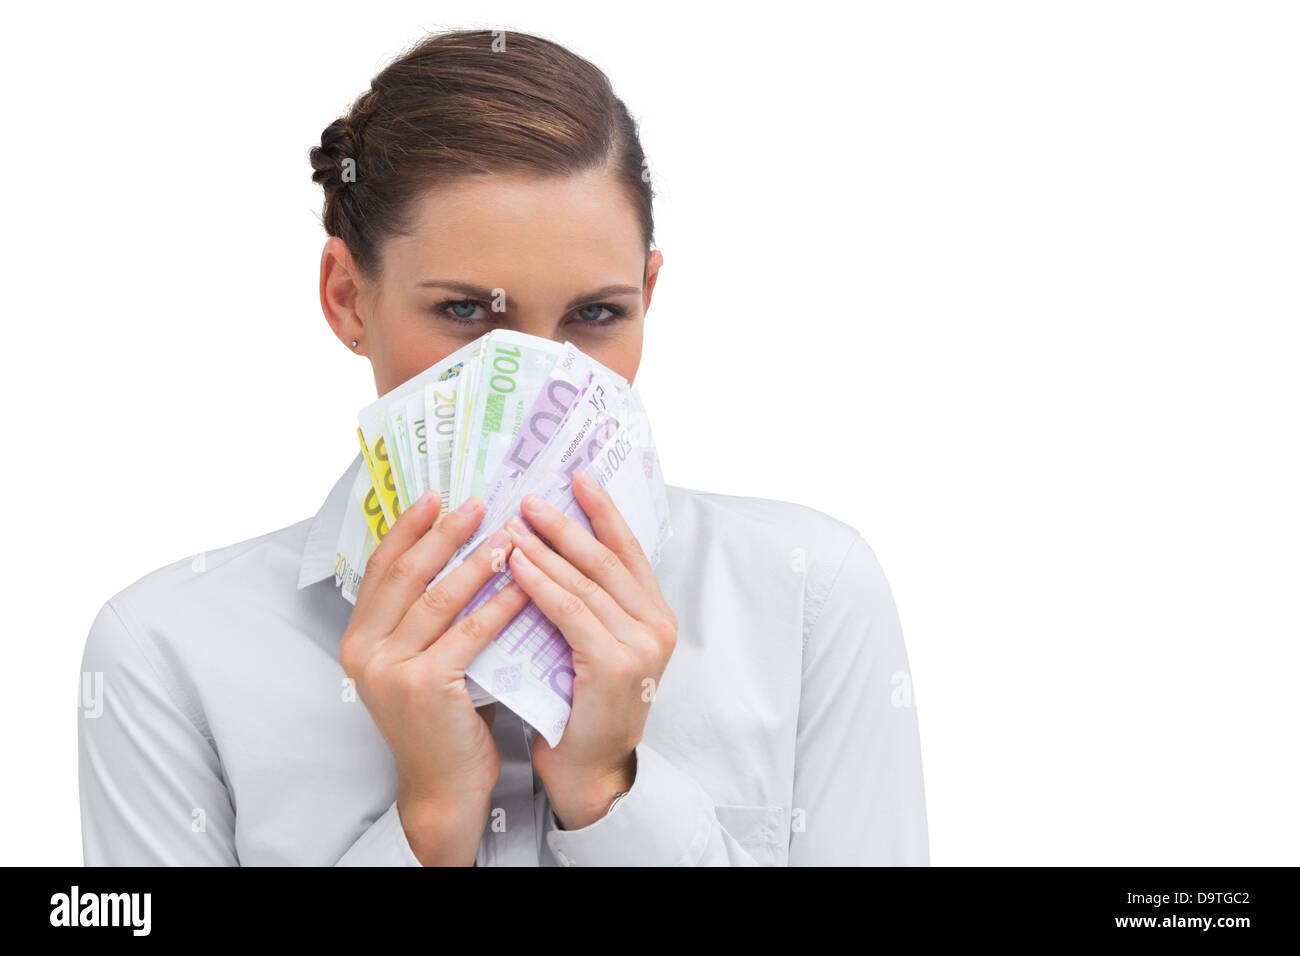 Businesswoman hiding behind money in her hands Stock Photo